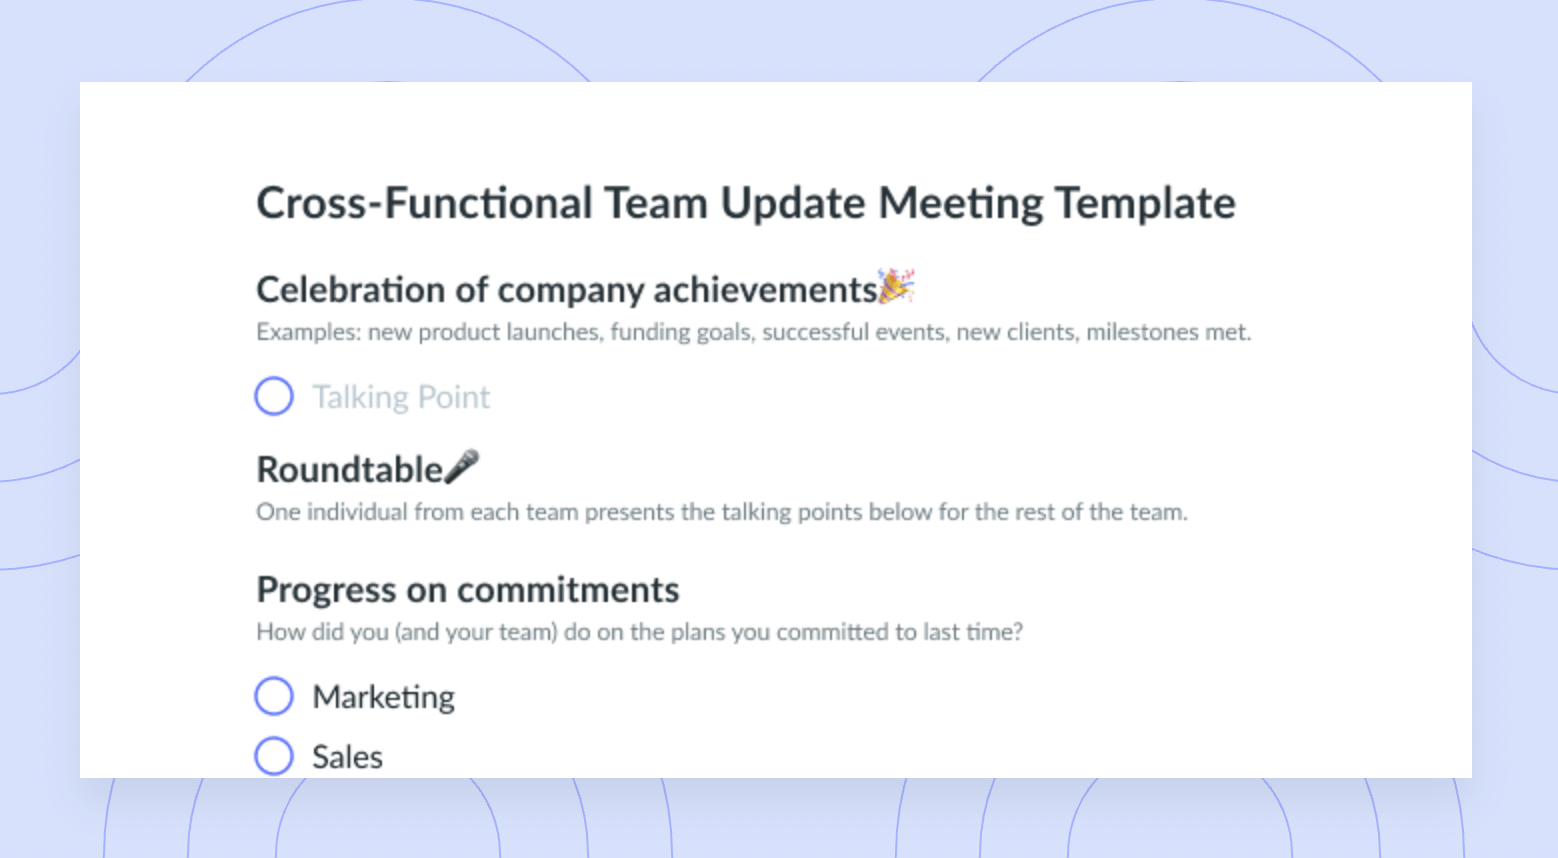 Cross-Functional Team Update Meeting Template